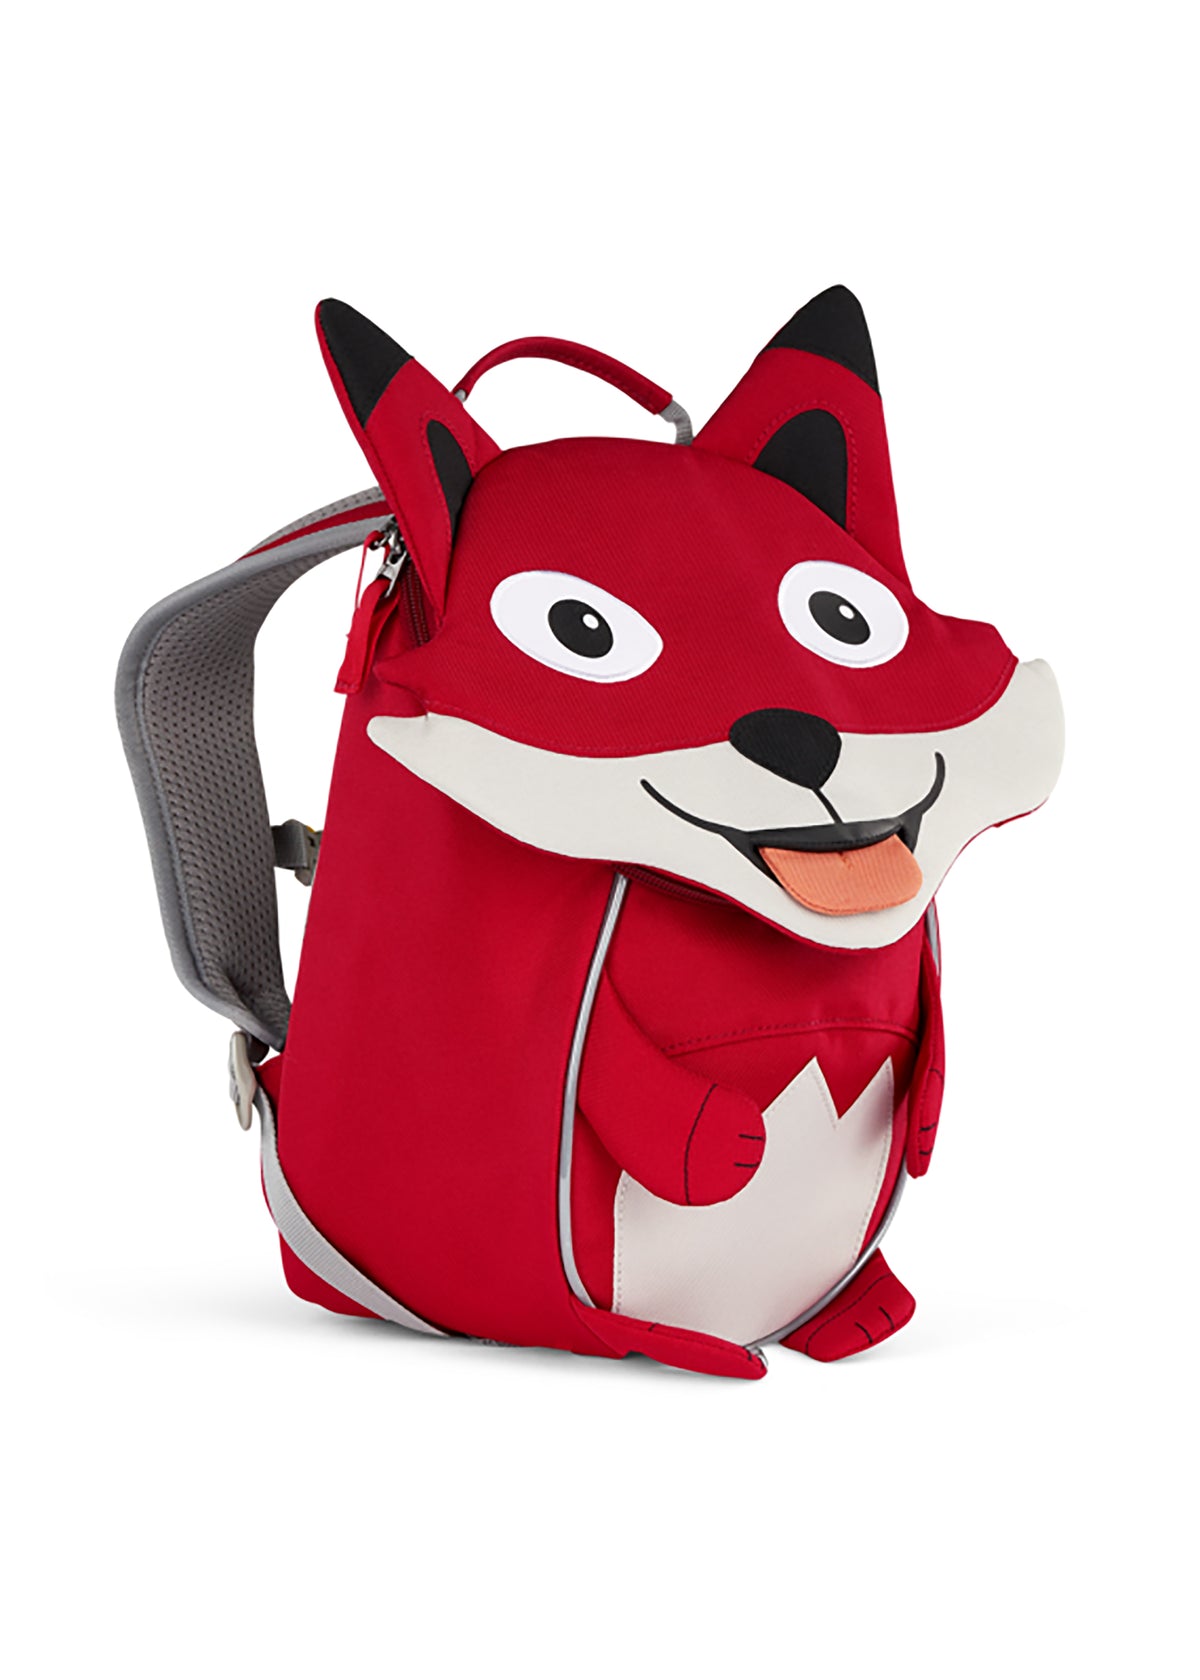 Barnryggsäck, liten - Fox